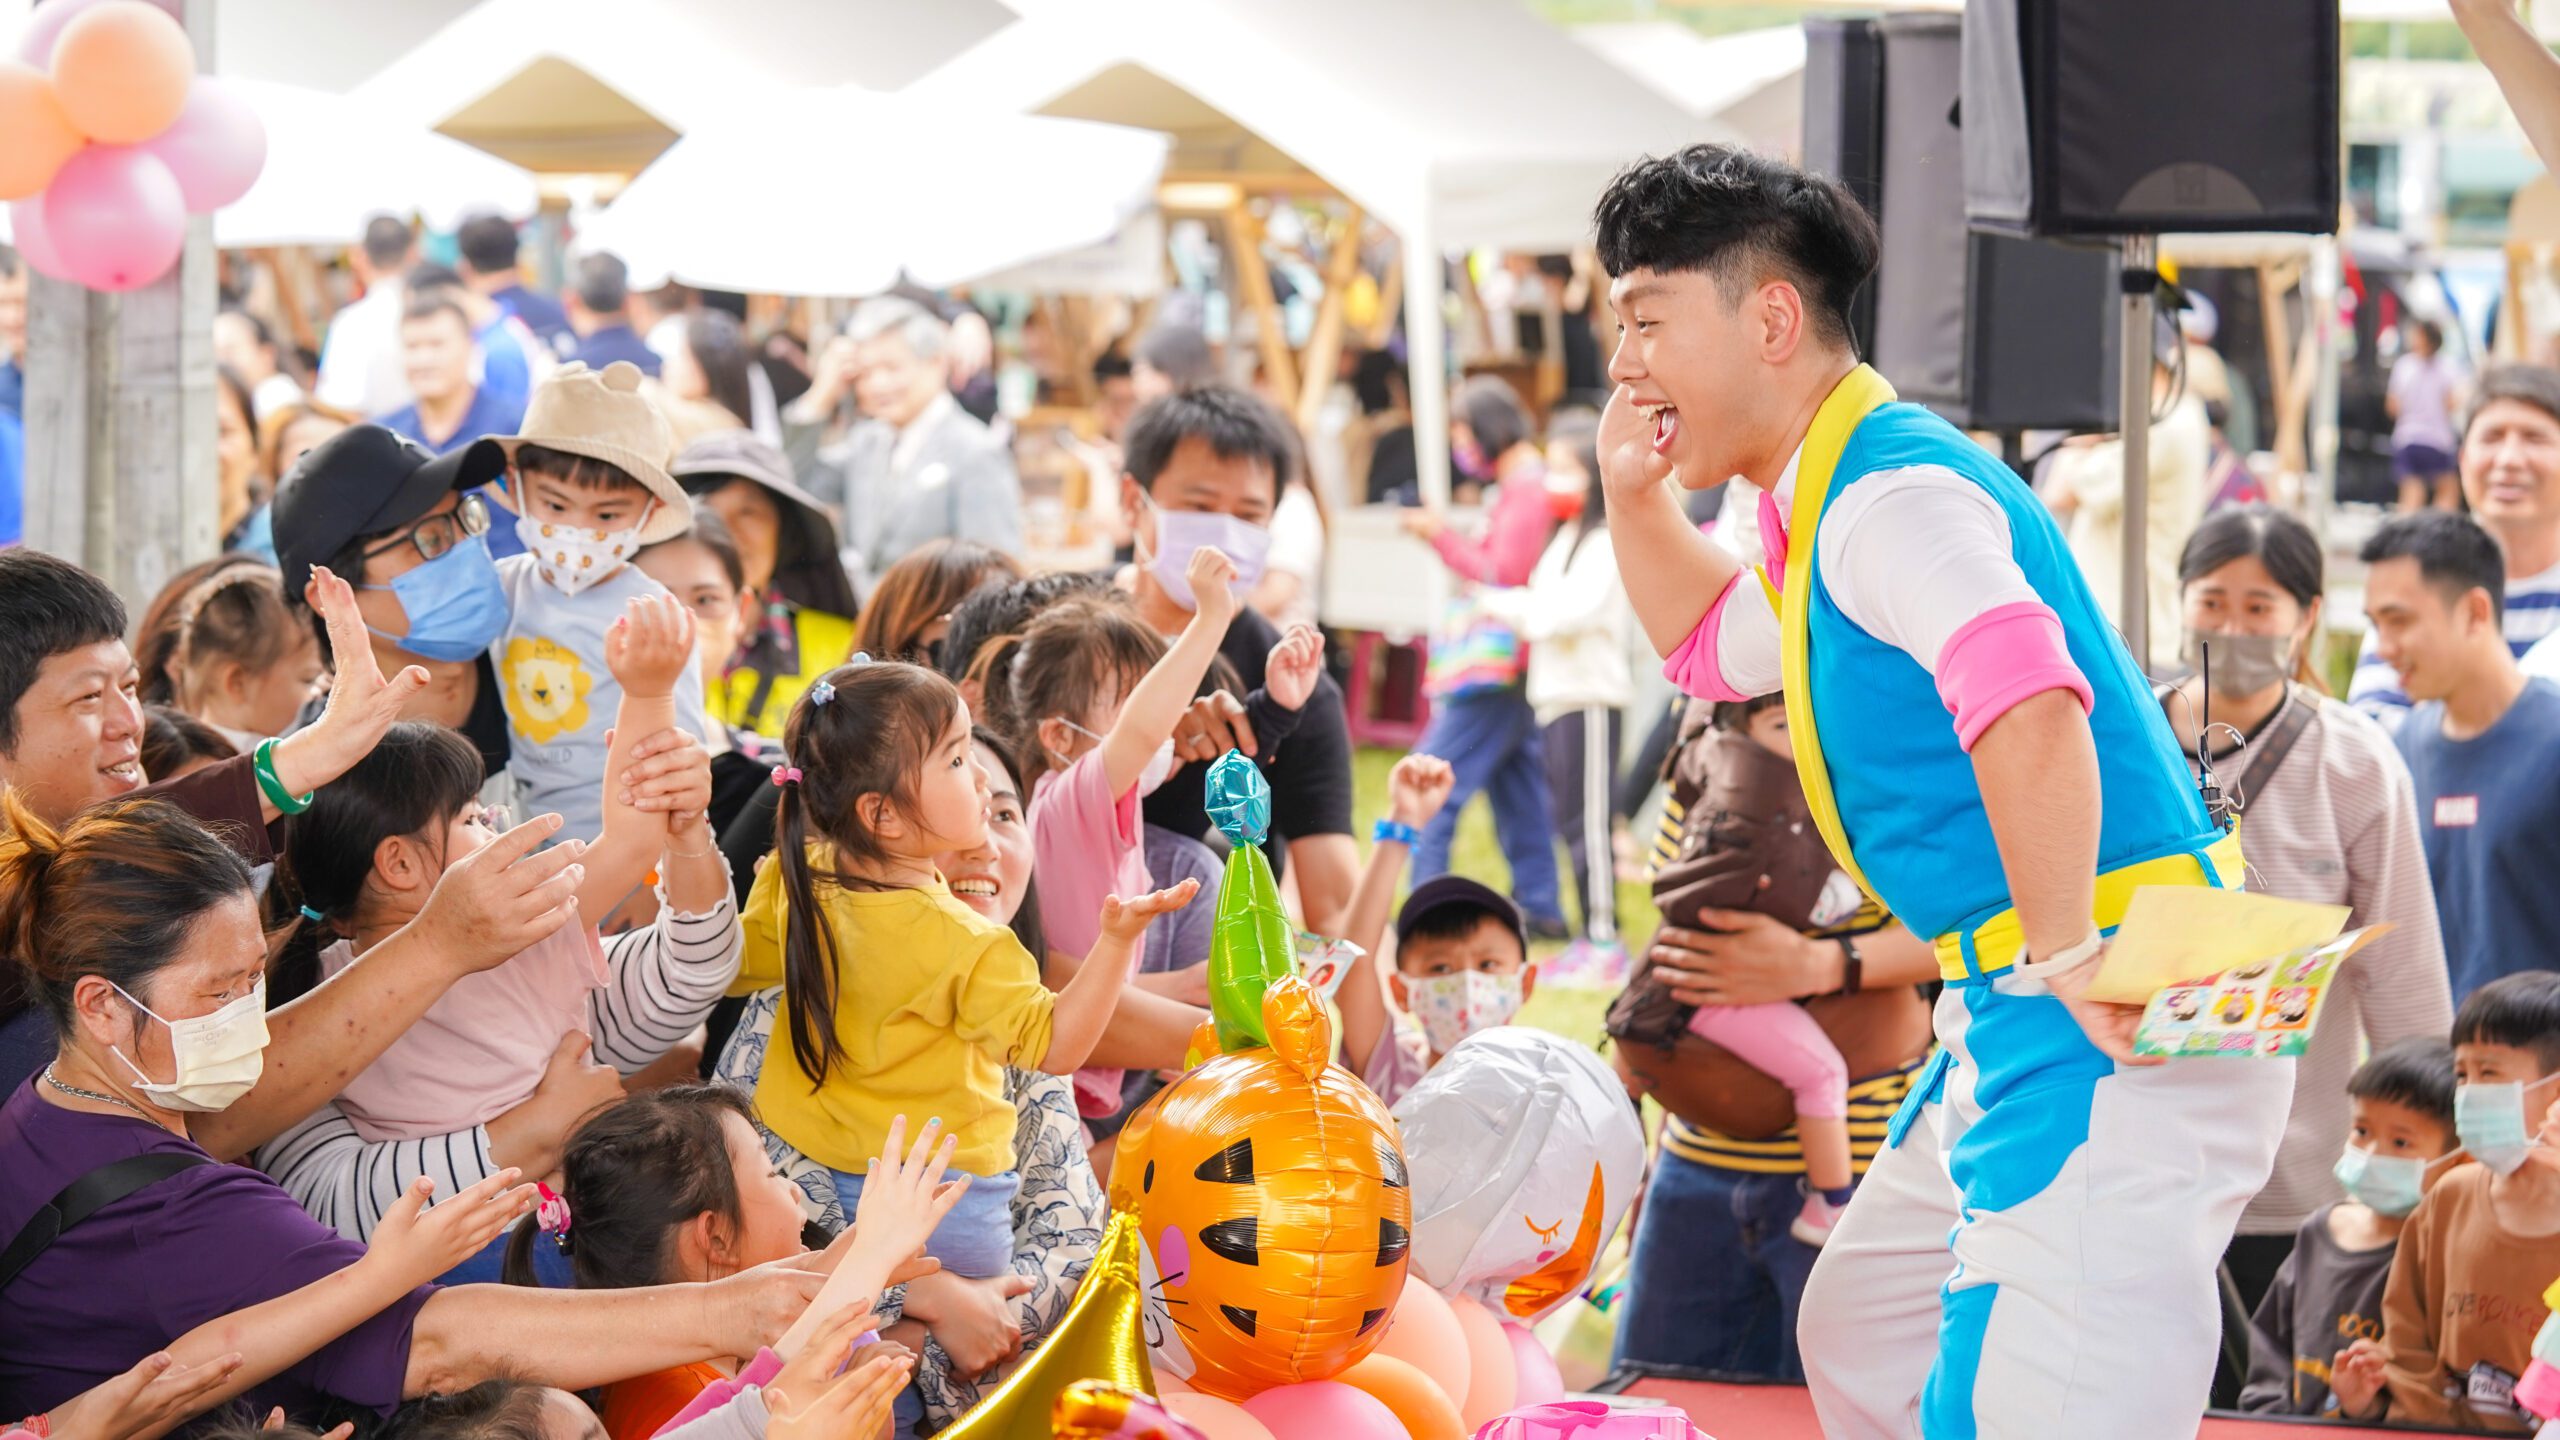 嗨翻河濱公園  宜蘭市兒童節超過千人「宜起來童樂」